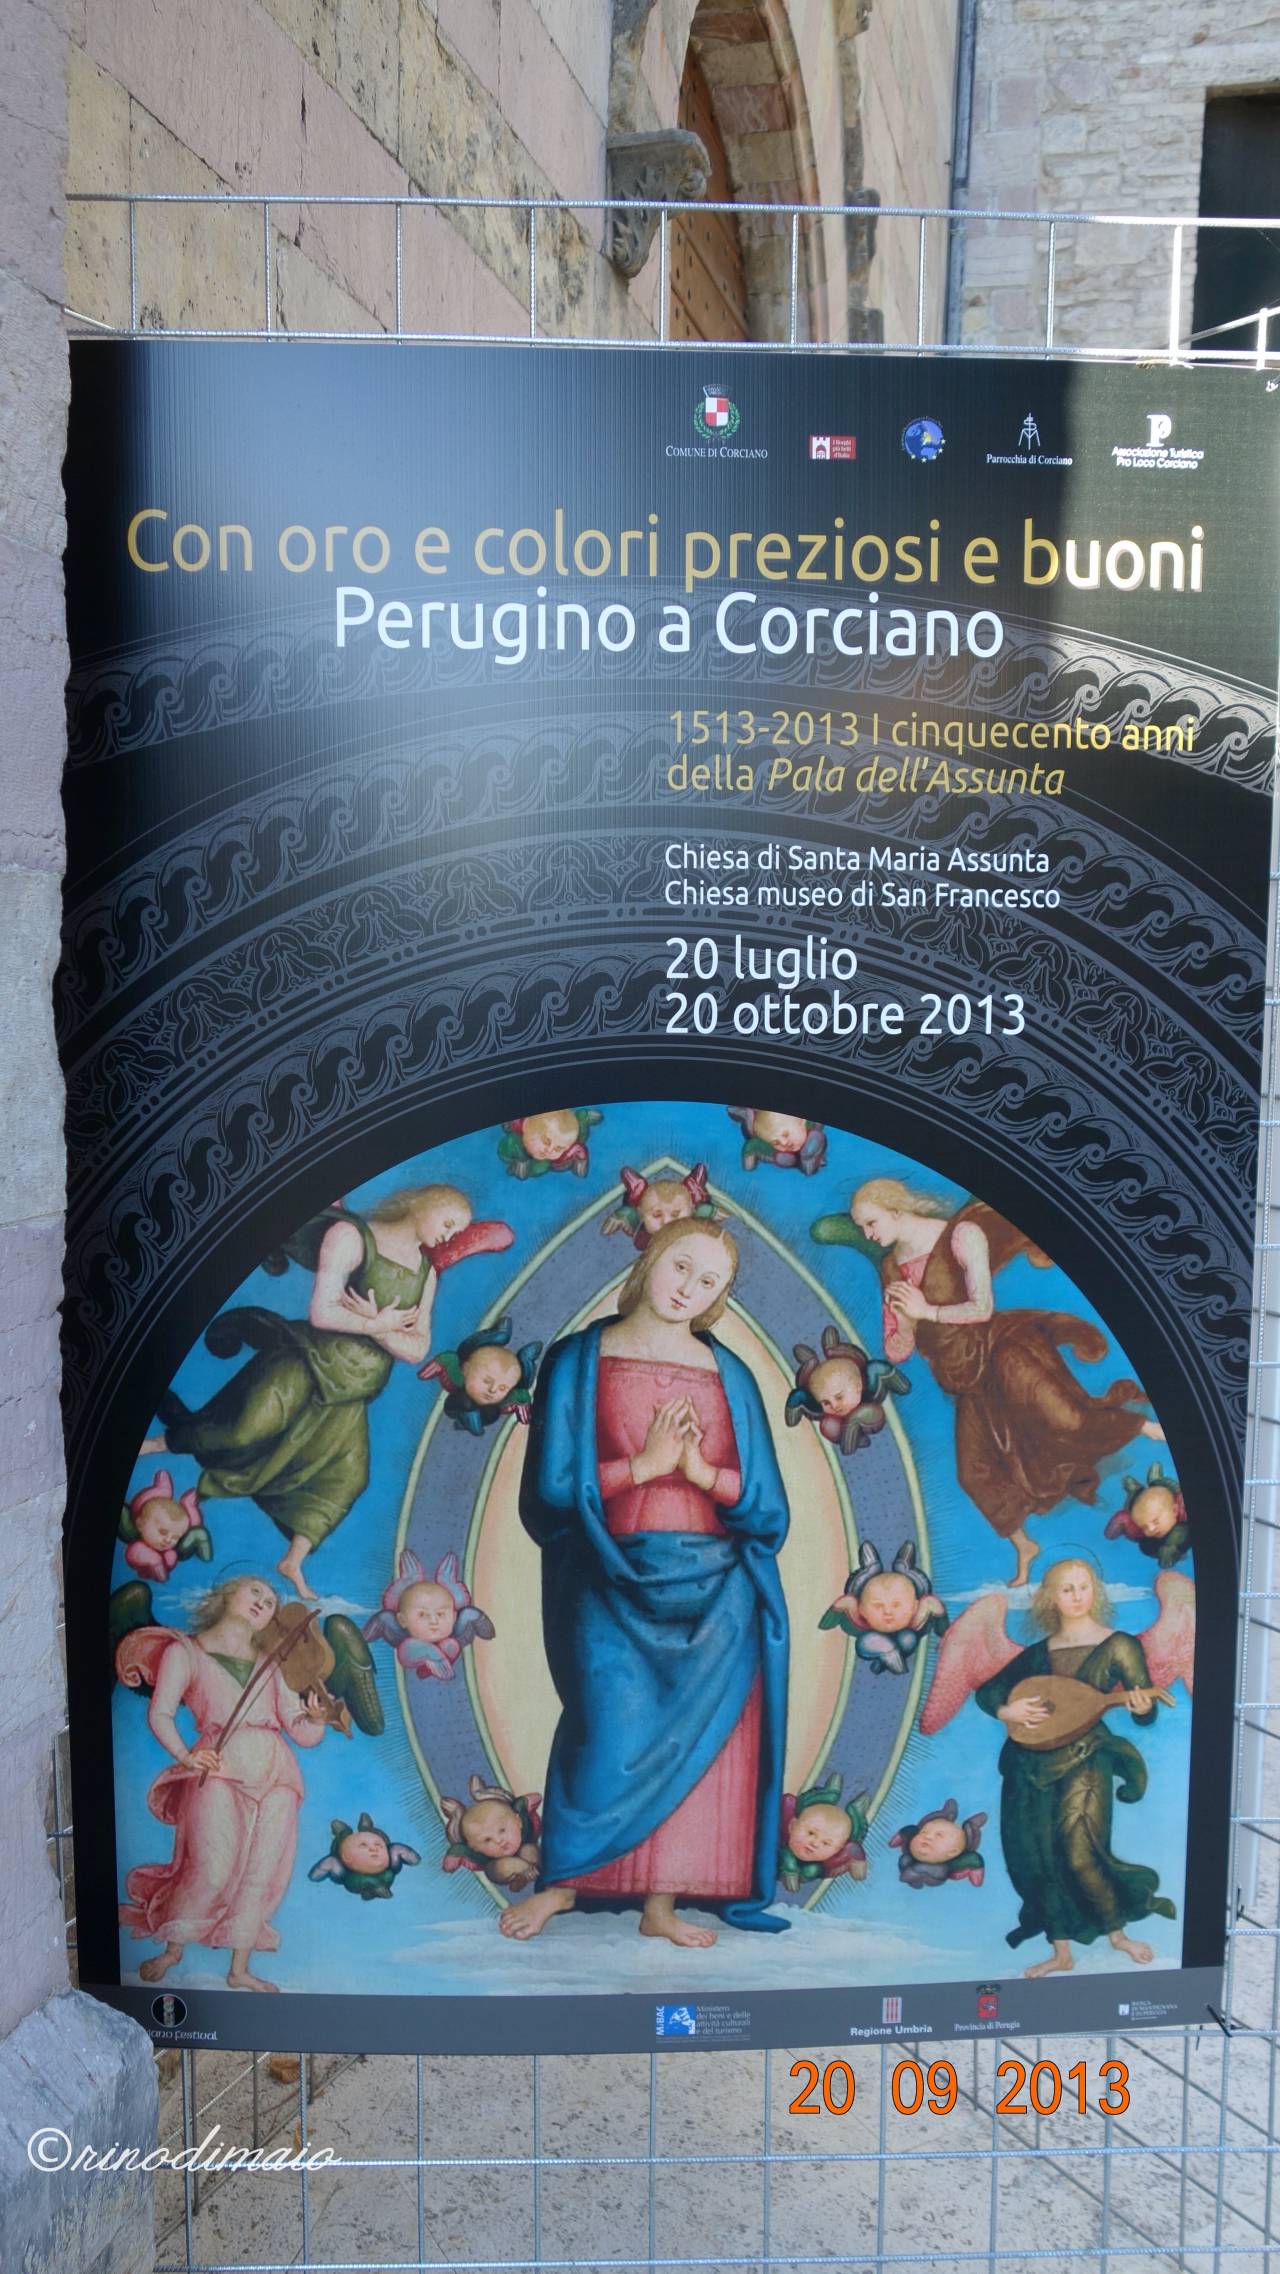 ©rinodimaio-Rotary visita mostra Perugino 20 settembre 2013-n.01